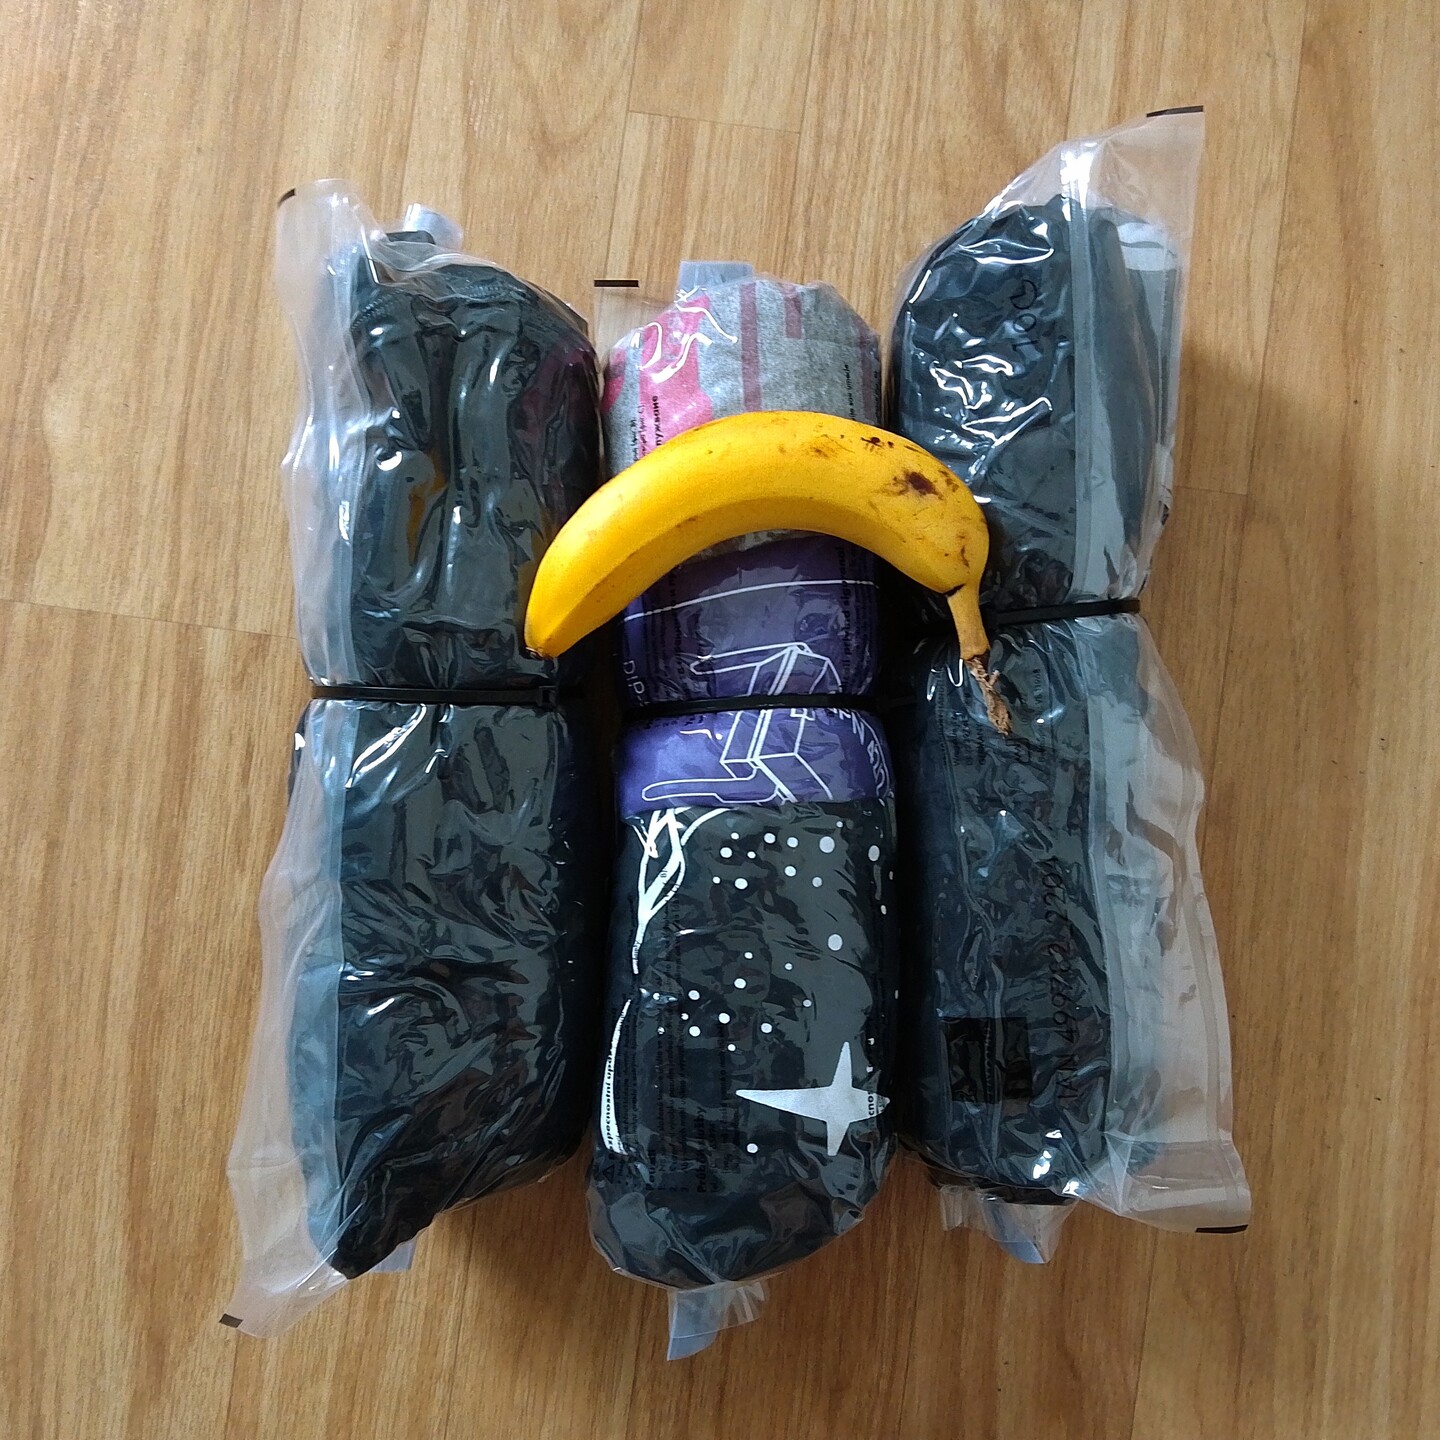 Kleidung in Vakuumbeutel eingerolt auf dennen eine Banane zum Größenvergleich liegt.